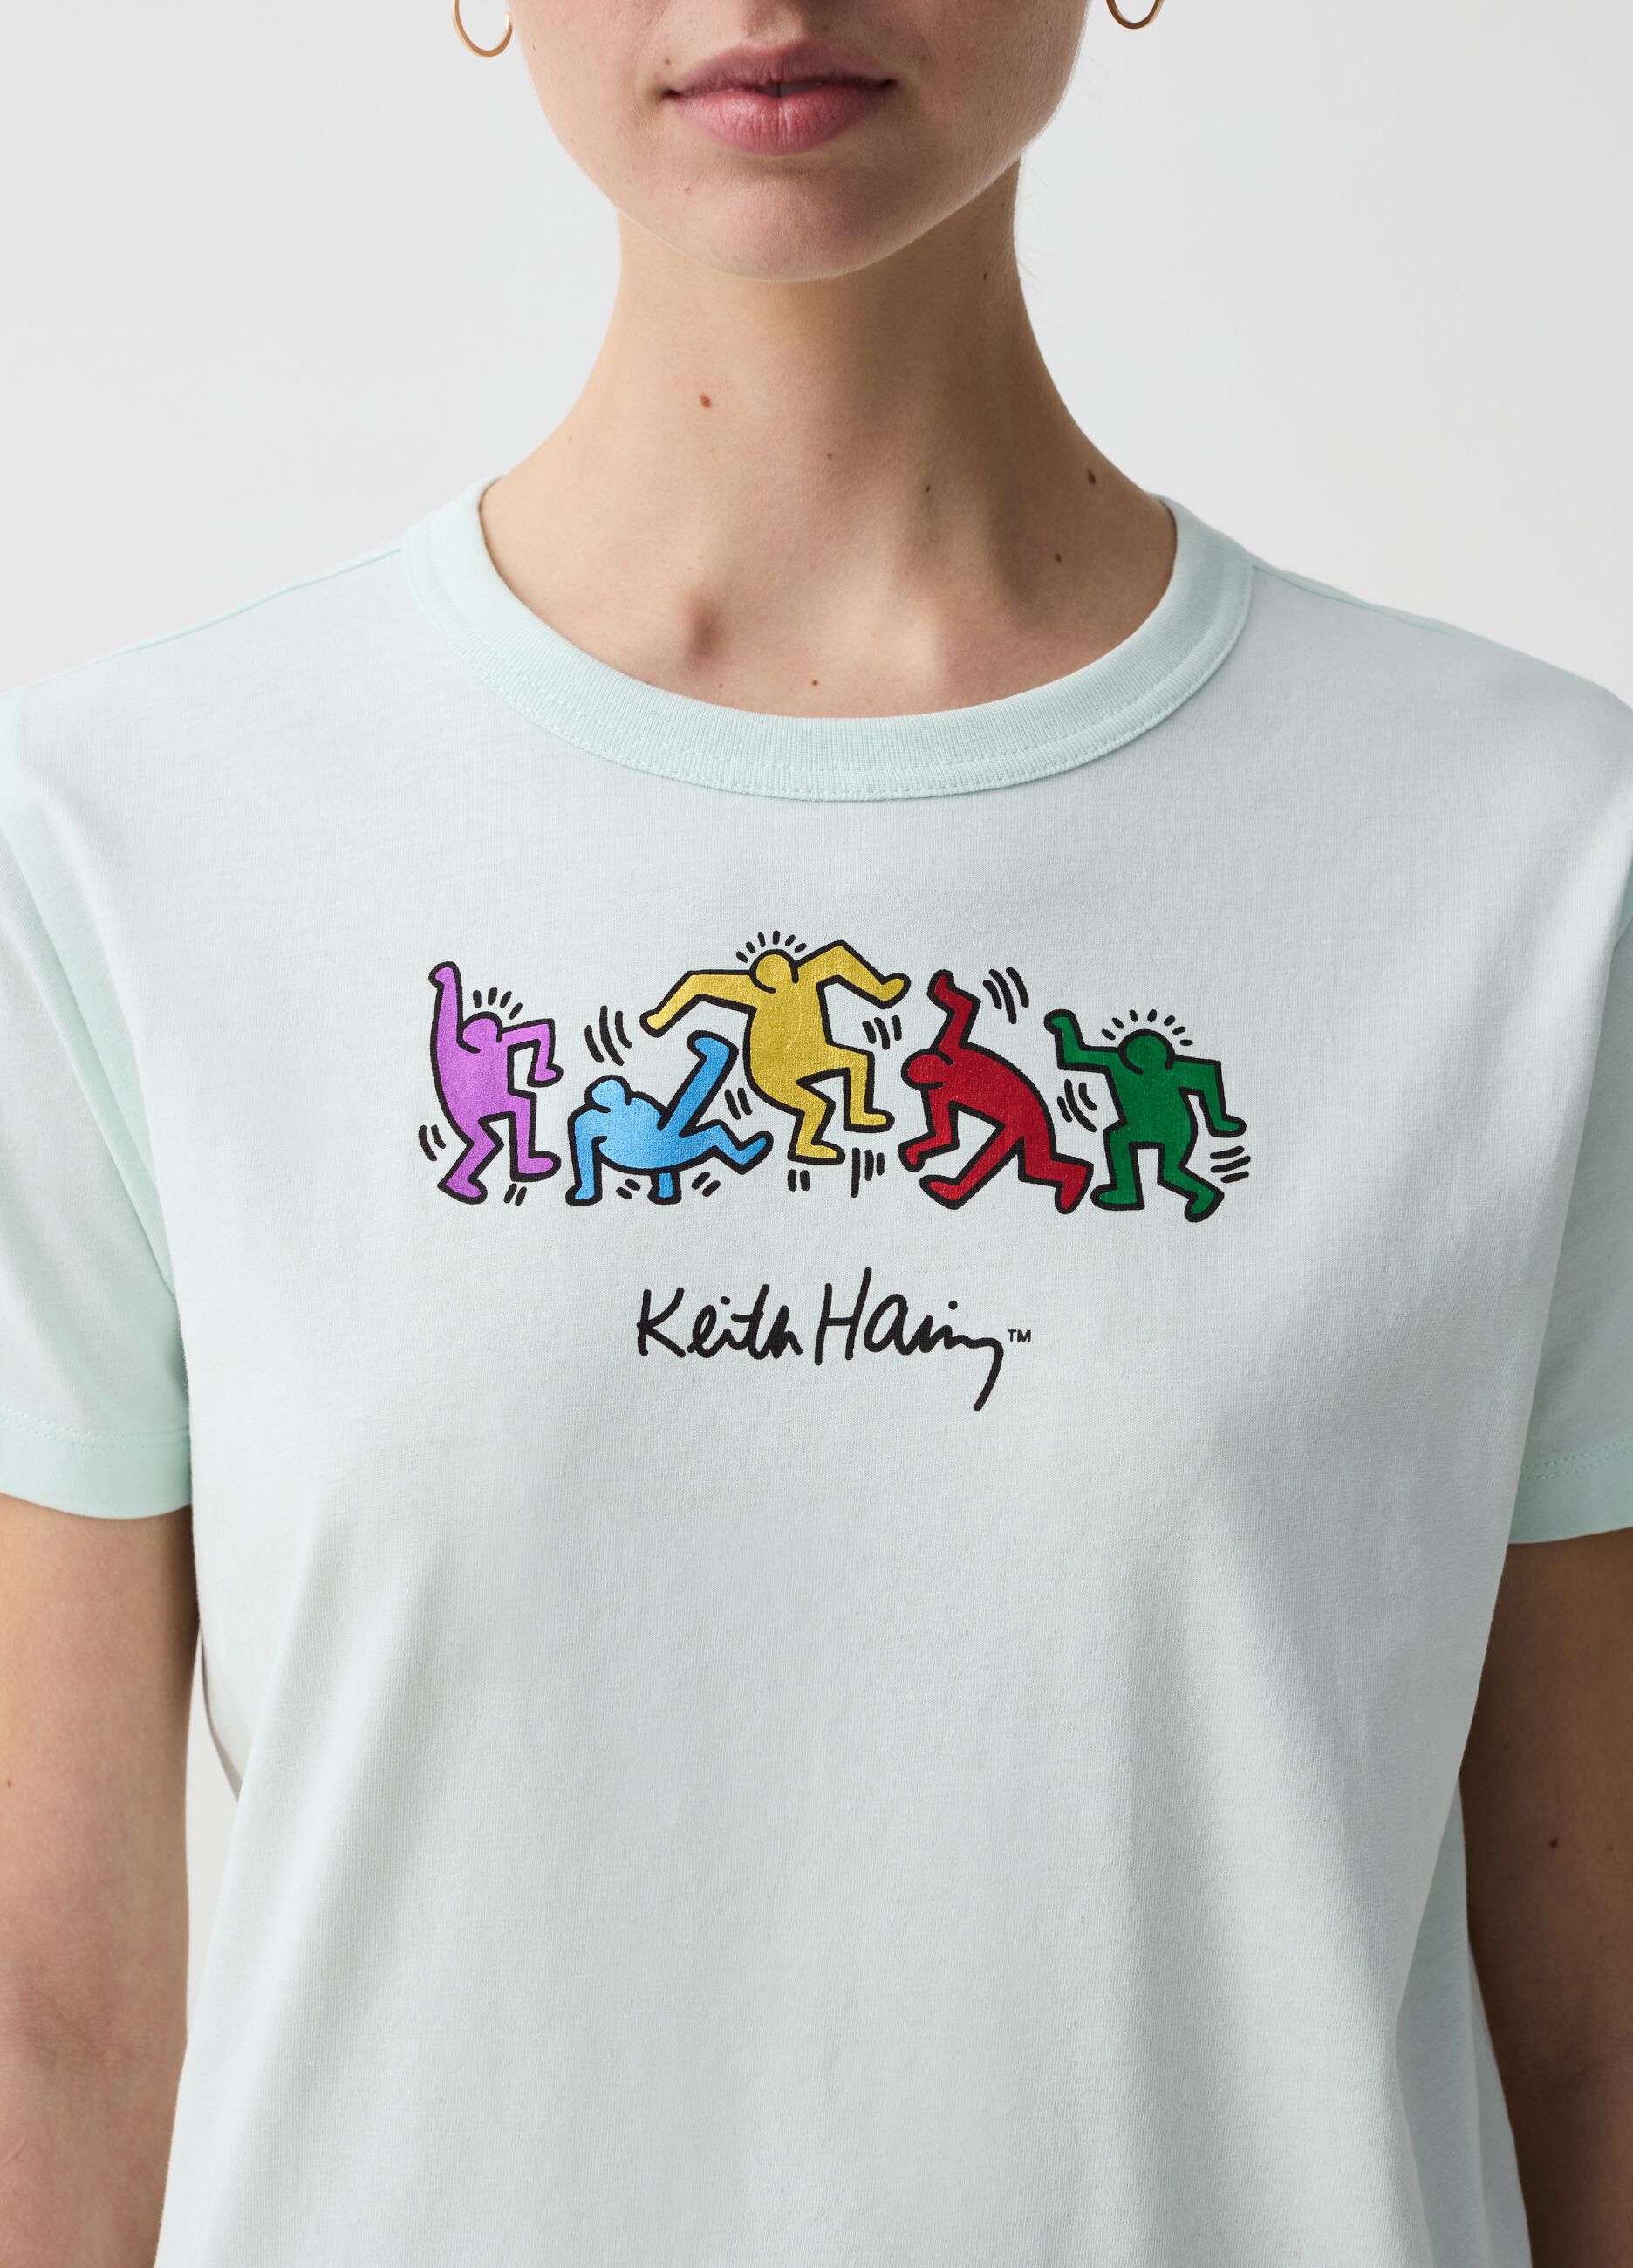 Camiseta estampado metalizado siluetas Keith Haring